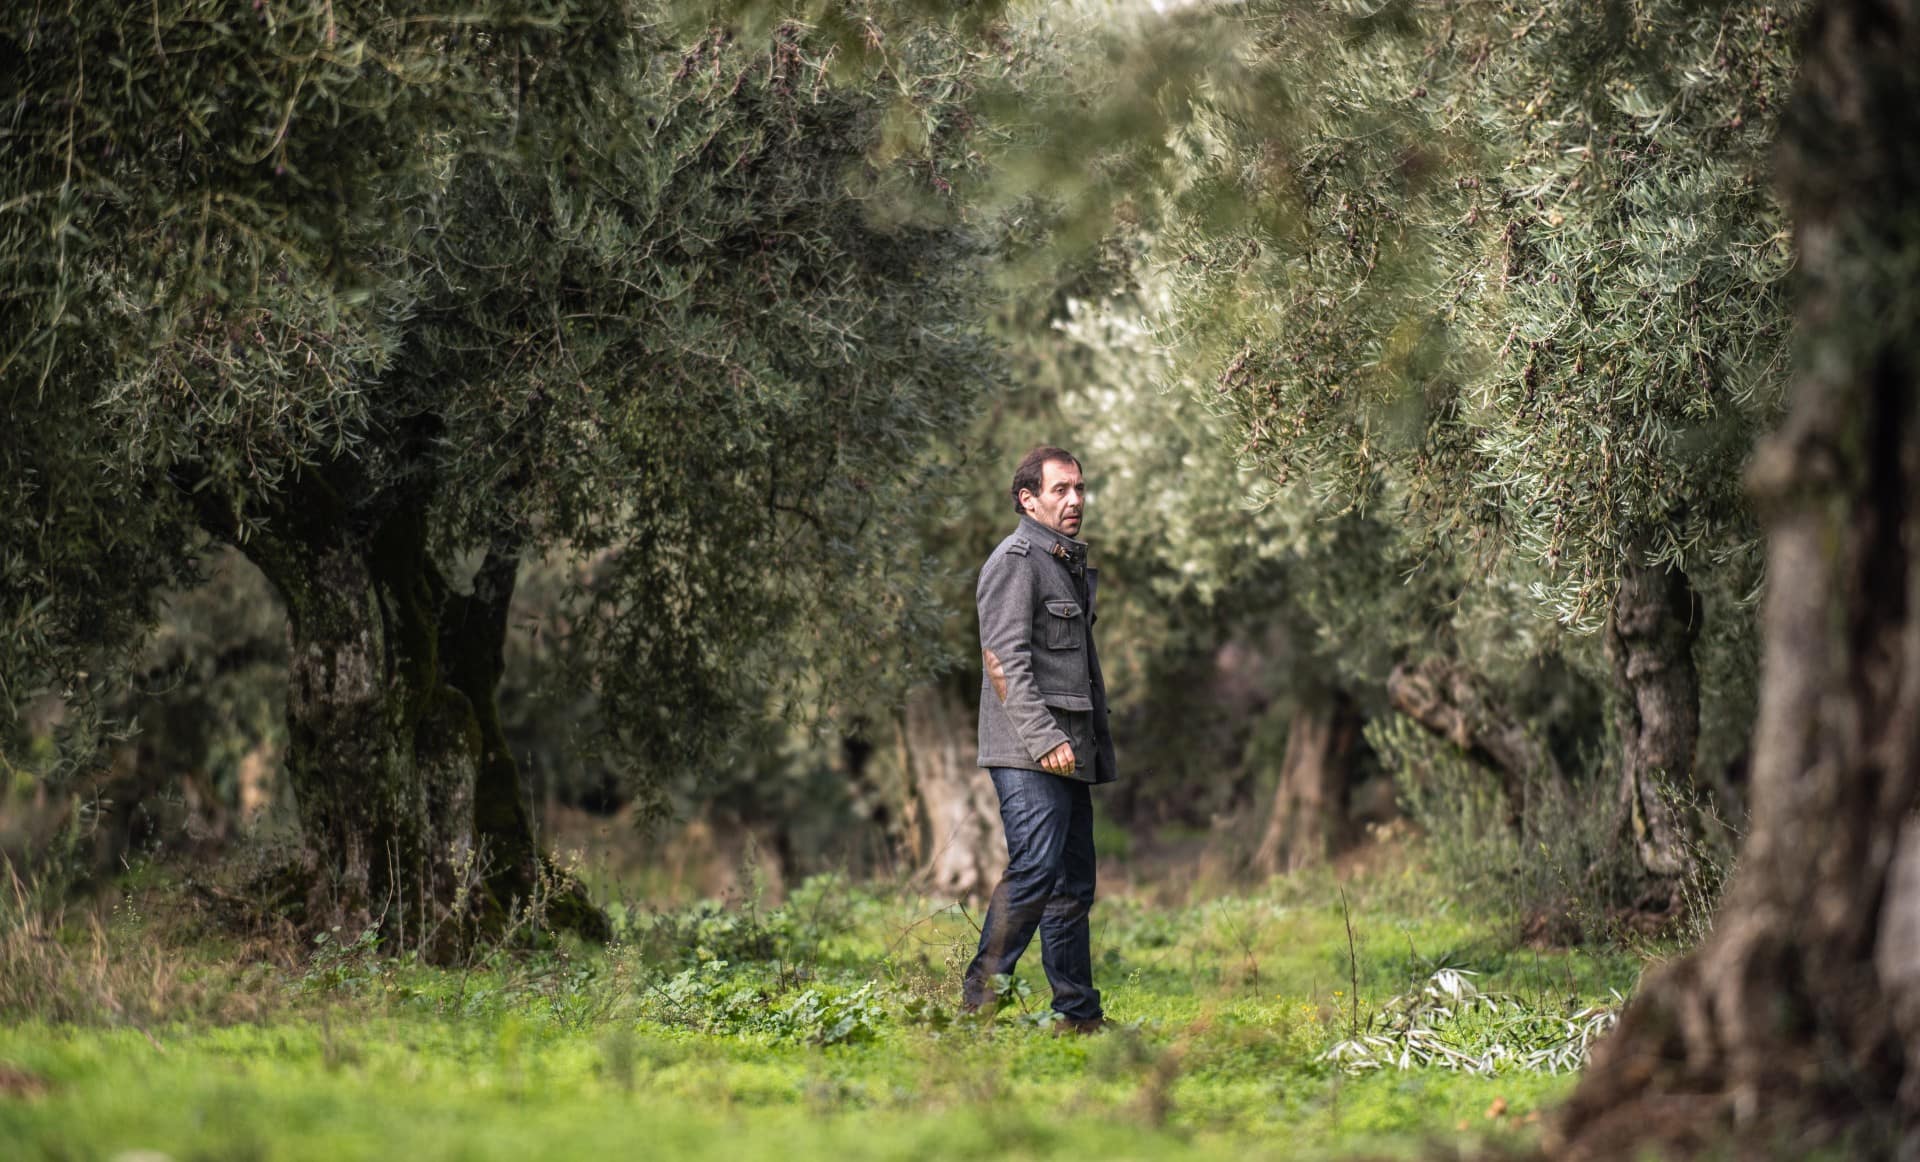 Европа-лучшие-конкурсы-оливкового масла-производство-португальские-производители-пожинают-преимущества-рекордного-урожая-на-мировой-конкуренции-оливкового-масла-раз